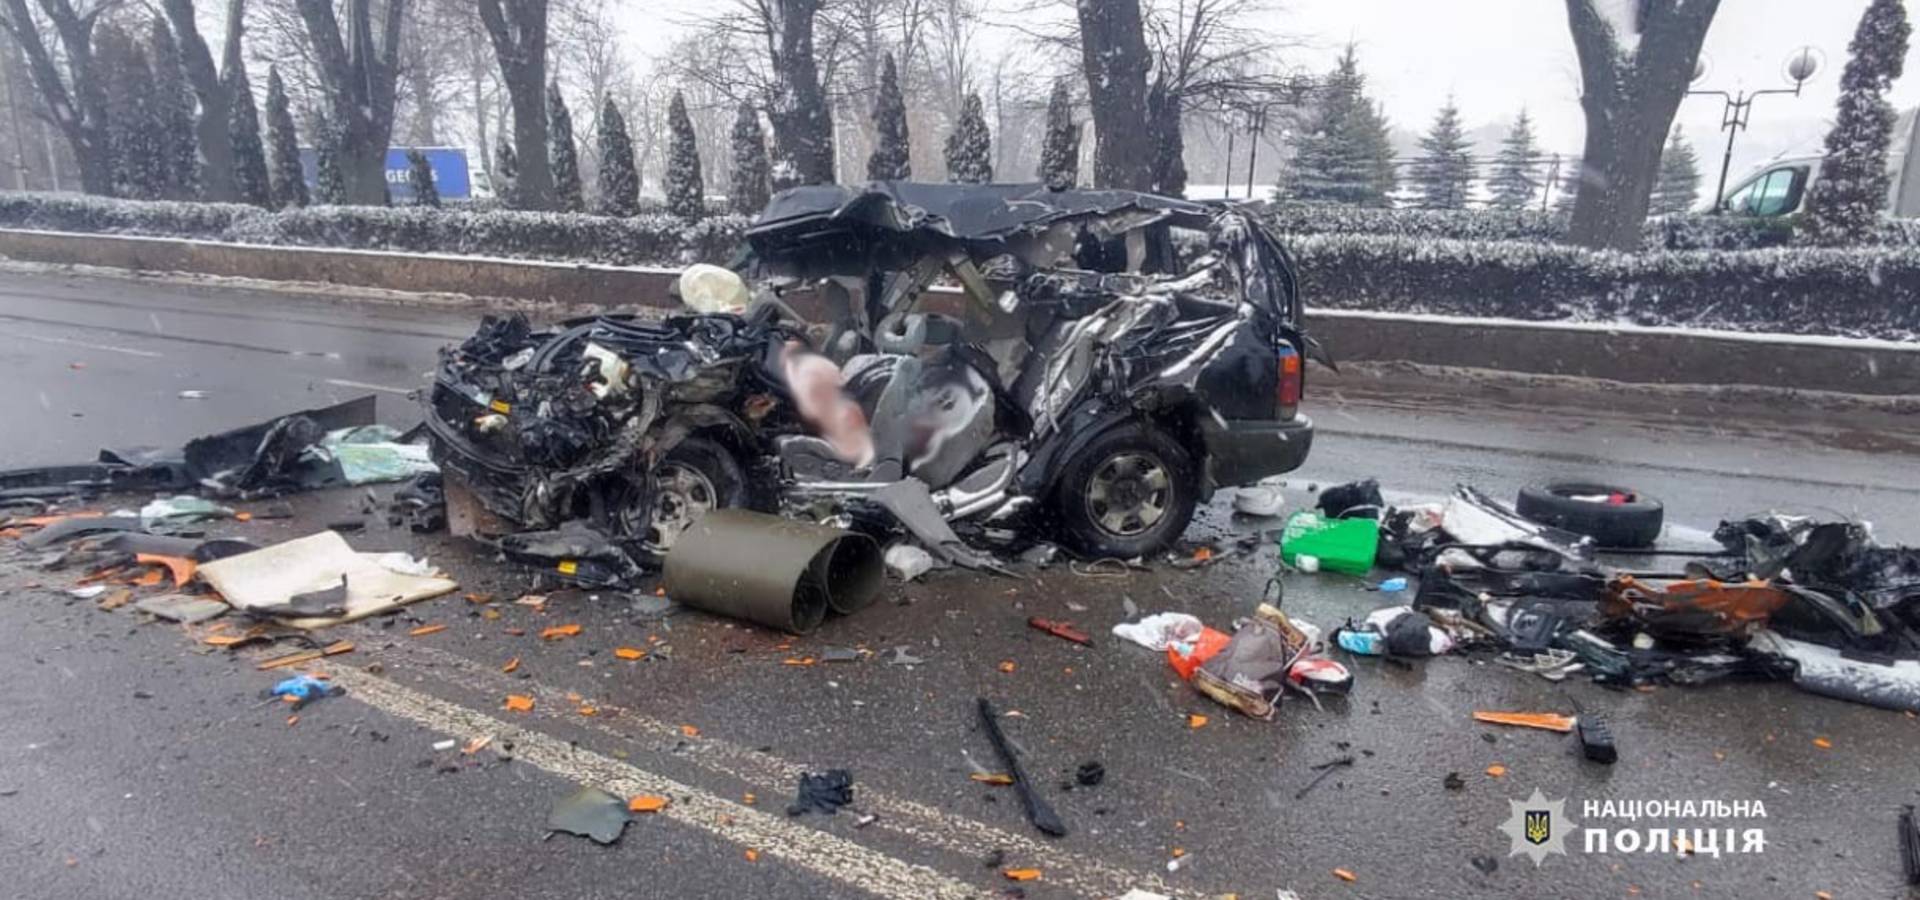 Жахлива аварія на Вінниччині. Двоє людей загинули